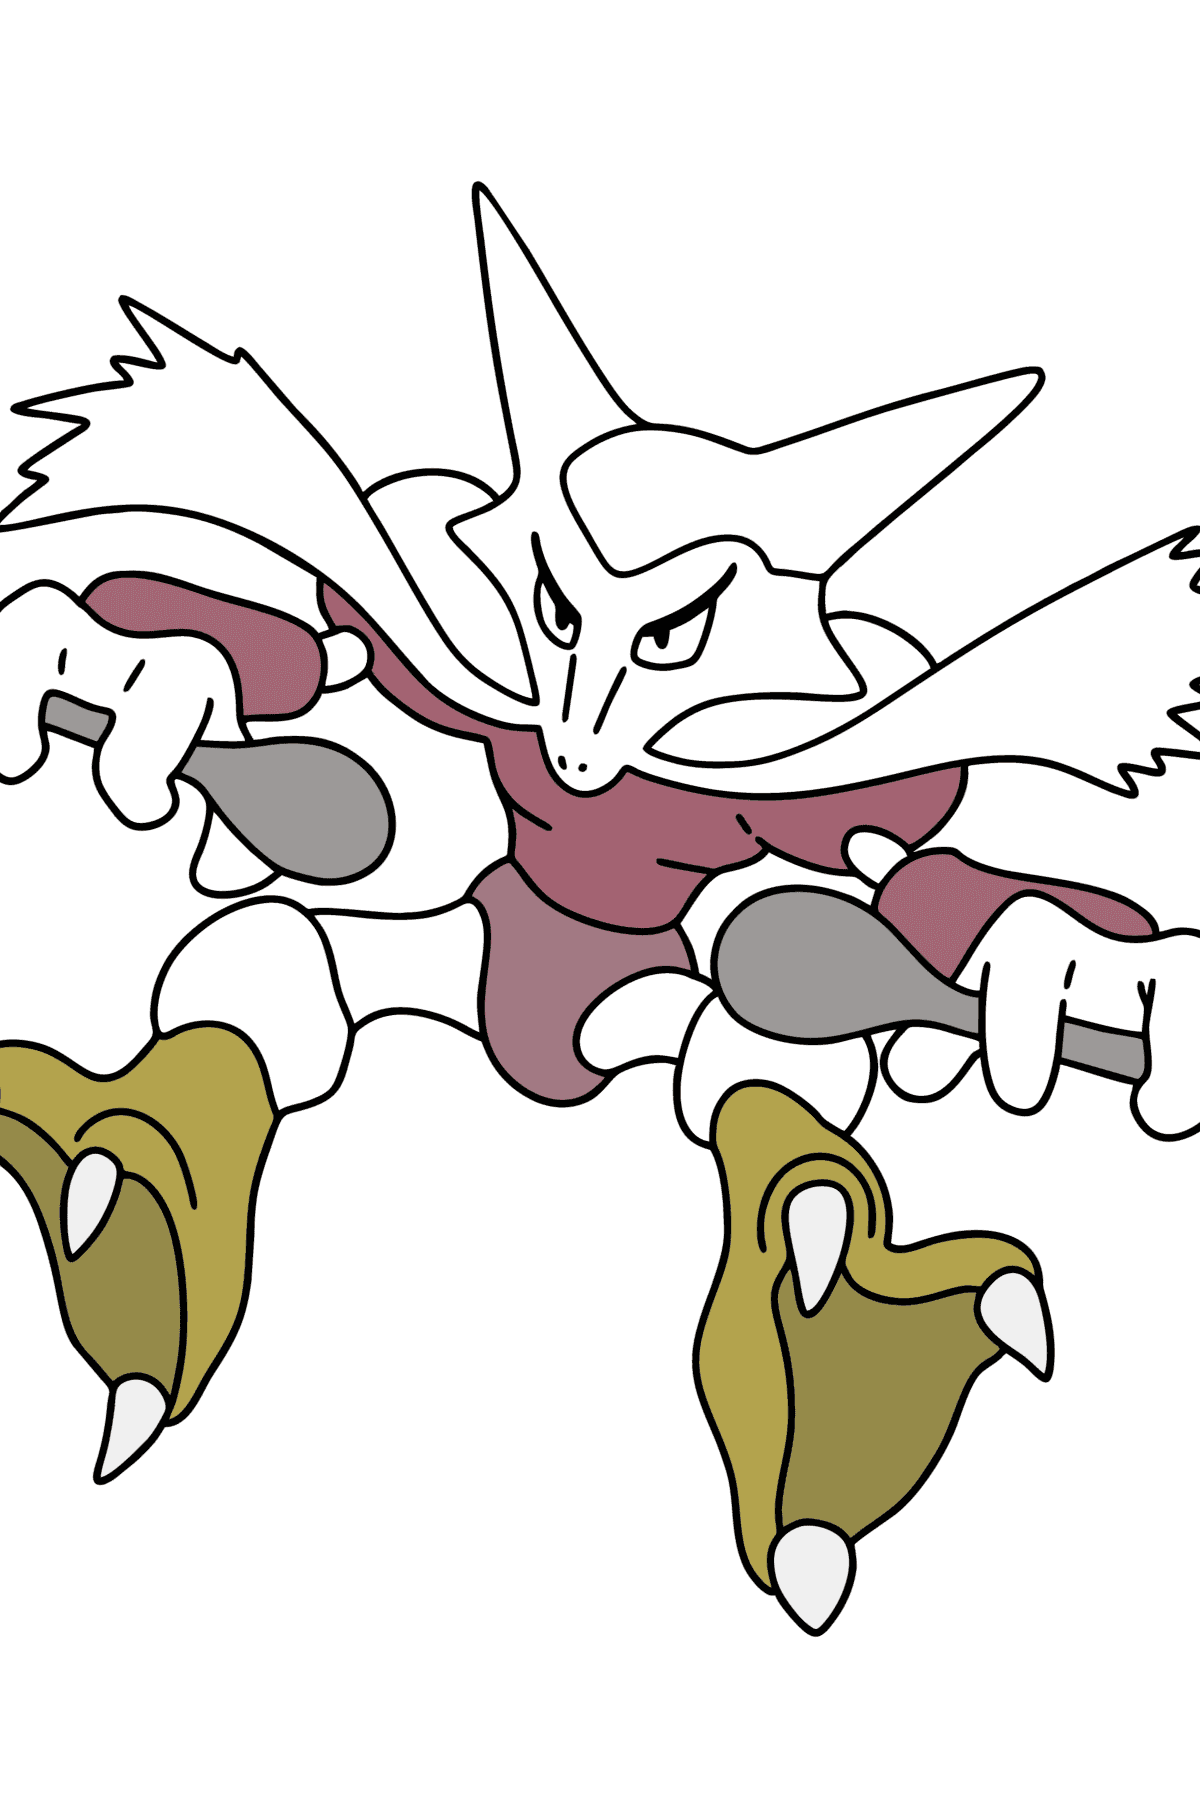 Mewarnai gambar Pokémon Go Alakazam - Mewarnai gambar untuk anak-anak